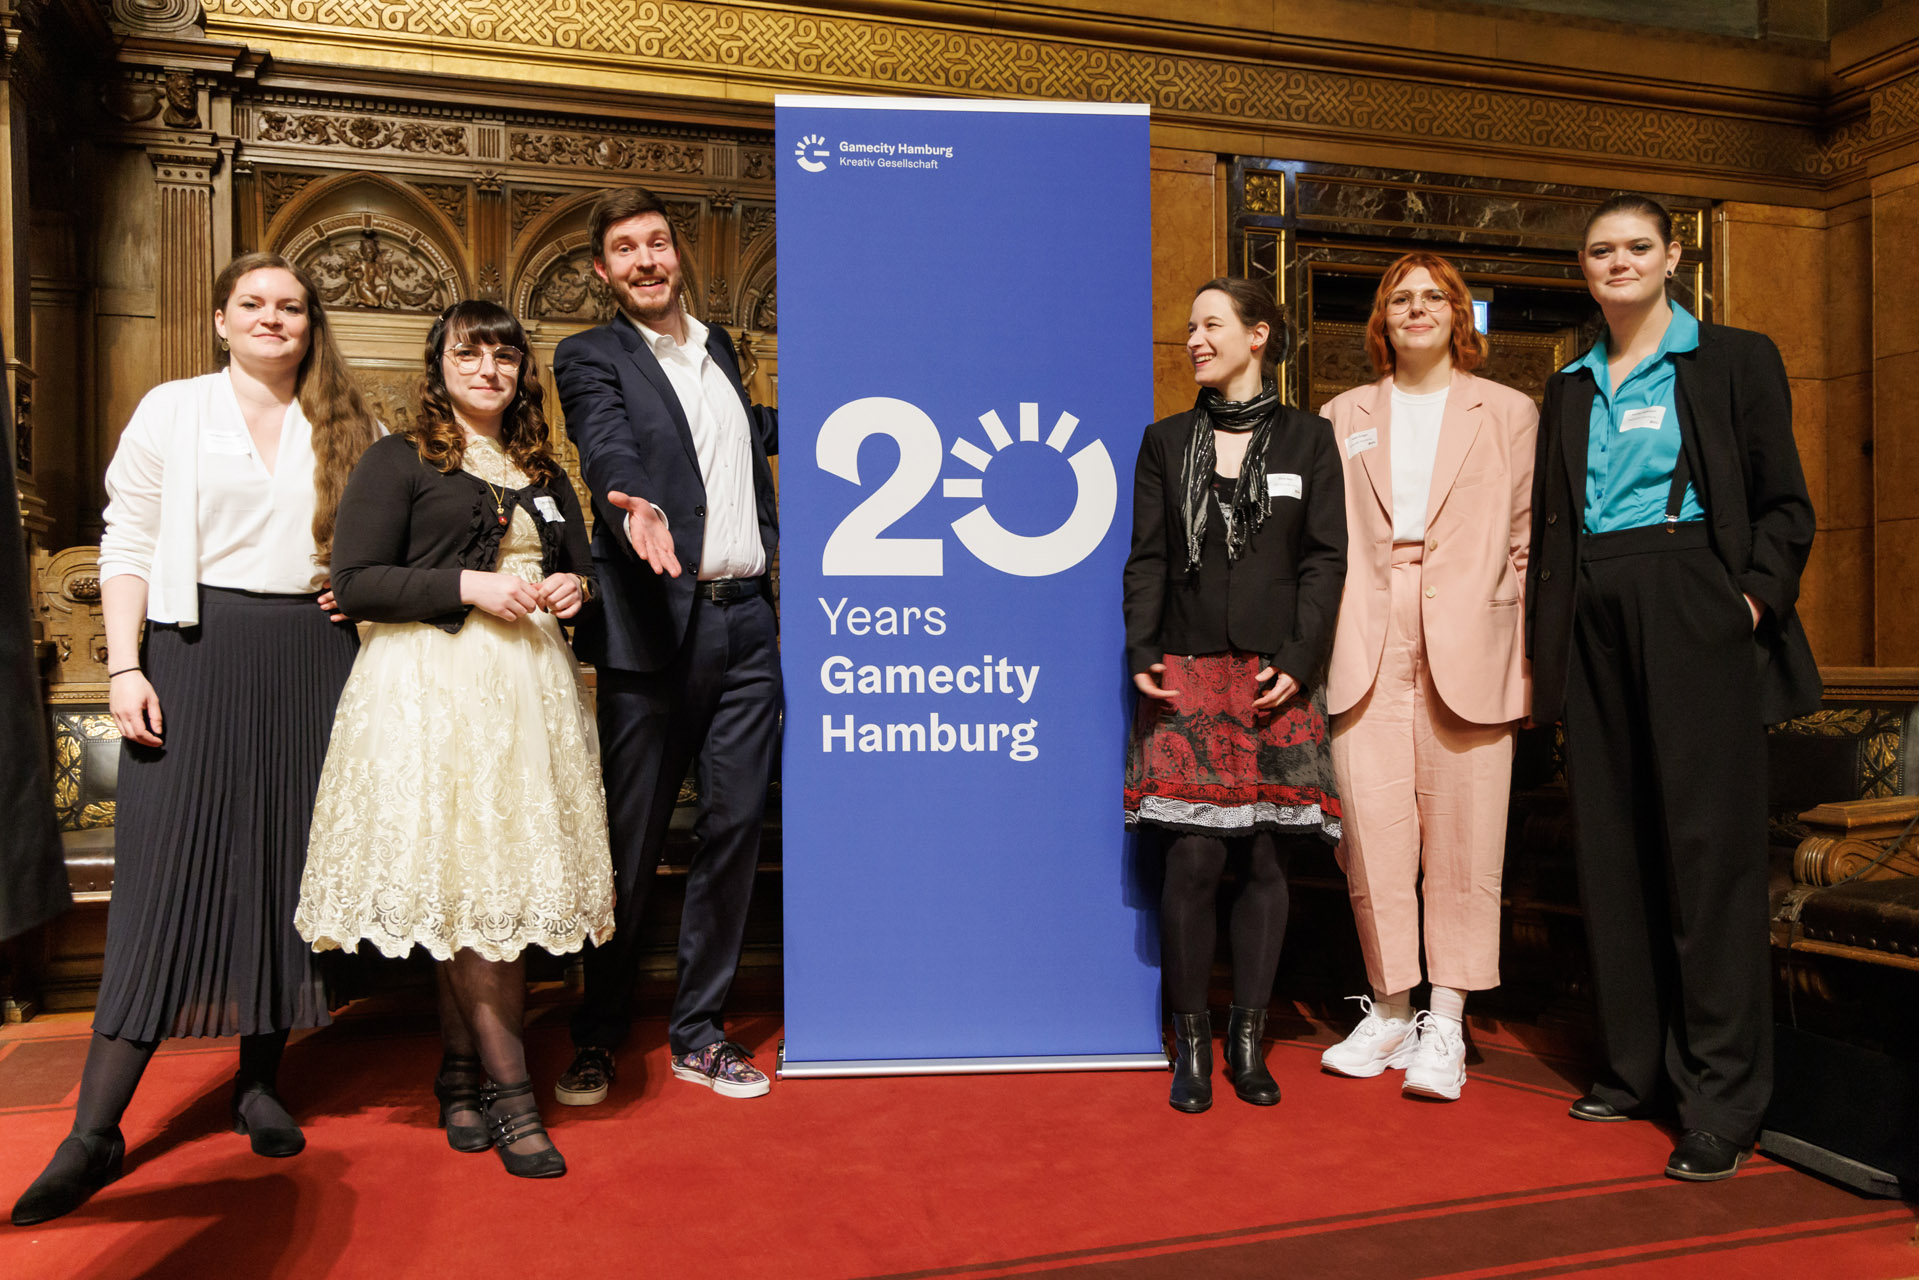 The current Gamecity Hamburg team (left to right): Margarete Schneider, Amanda Förtsch, Dennis Schoubye, Anna Jäger, Helen Krüger, Annika Heilmann / Photo by Marcelo Hernandez